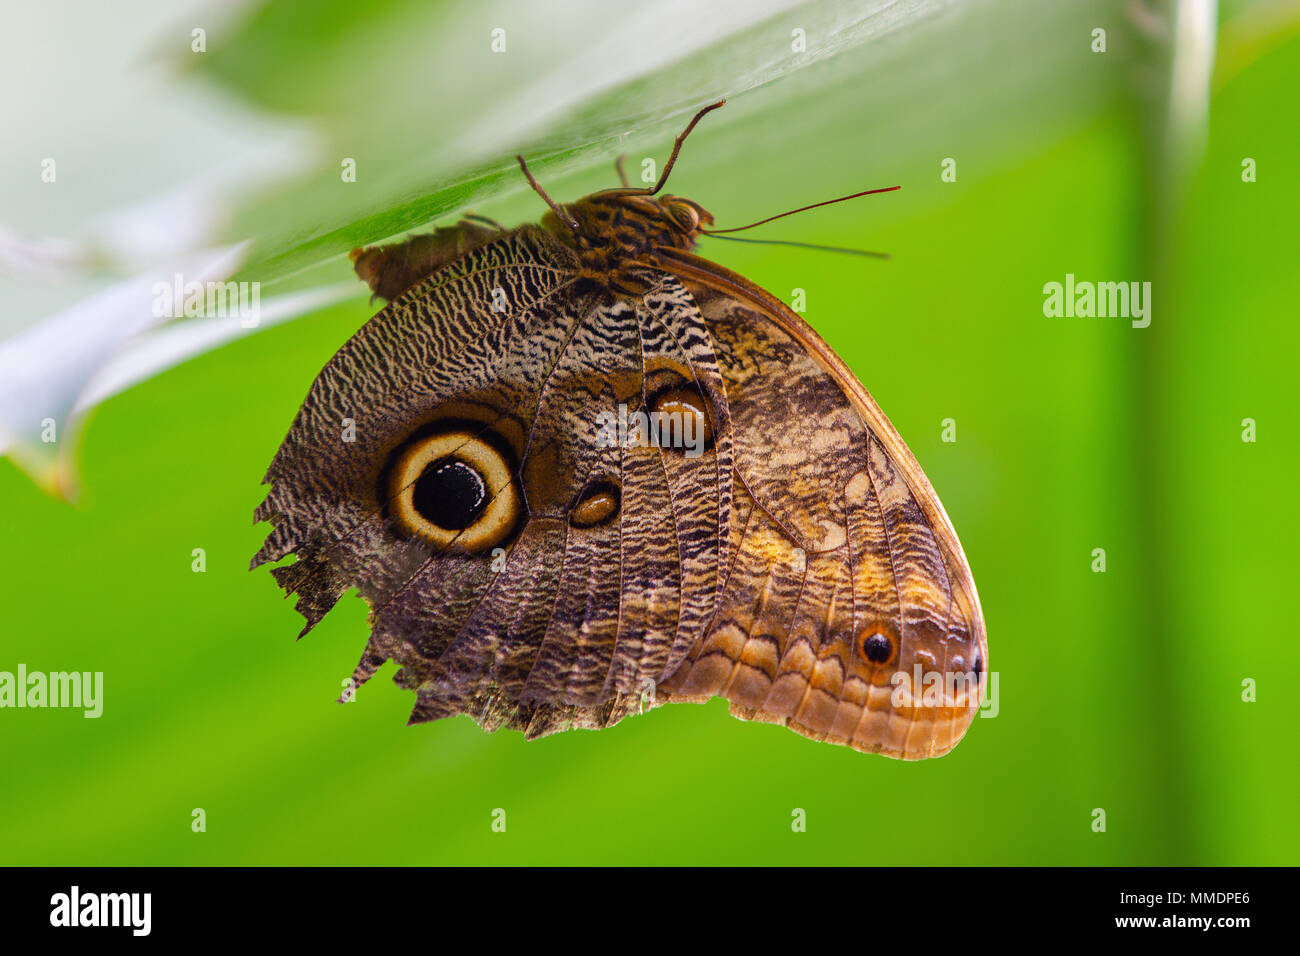 Eine schöne Nahaufnahme von einem Schmetterling auf den Kopf ruht auf einem grünen Blatt Stockfoto